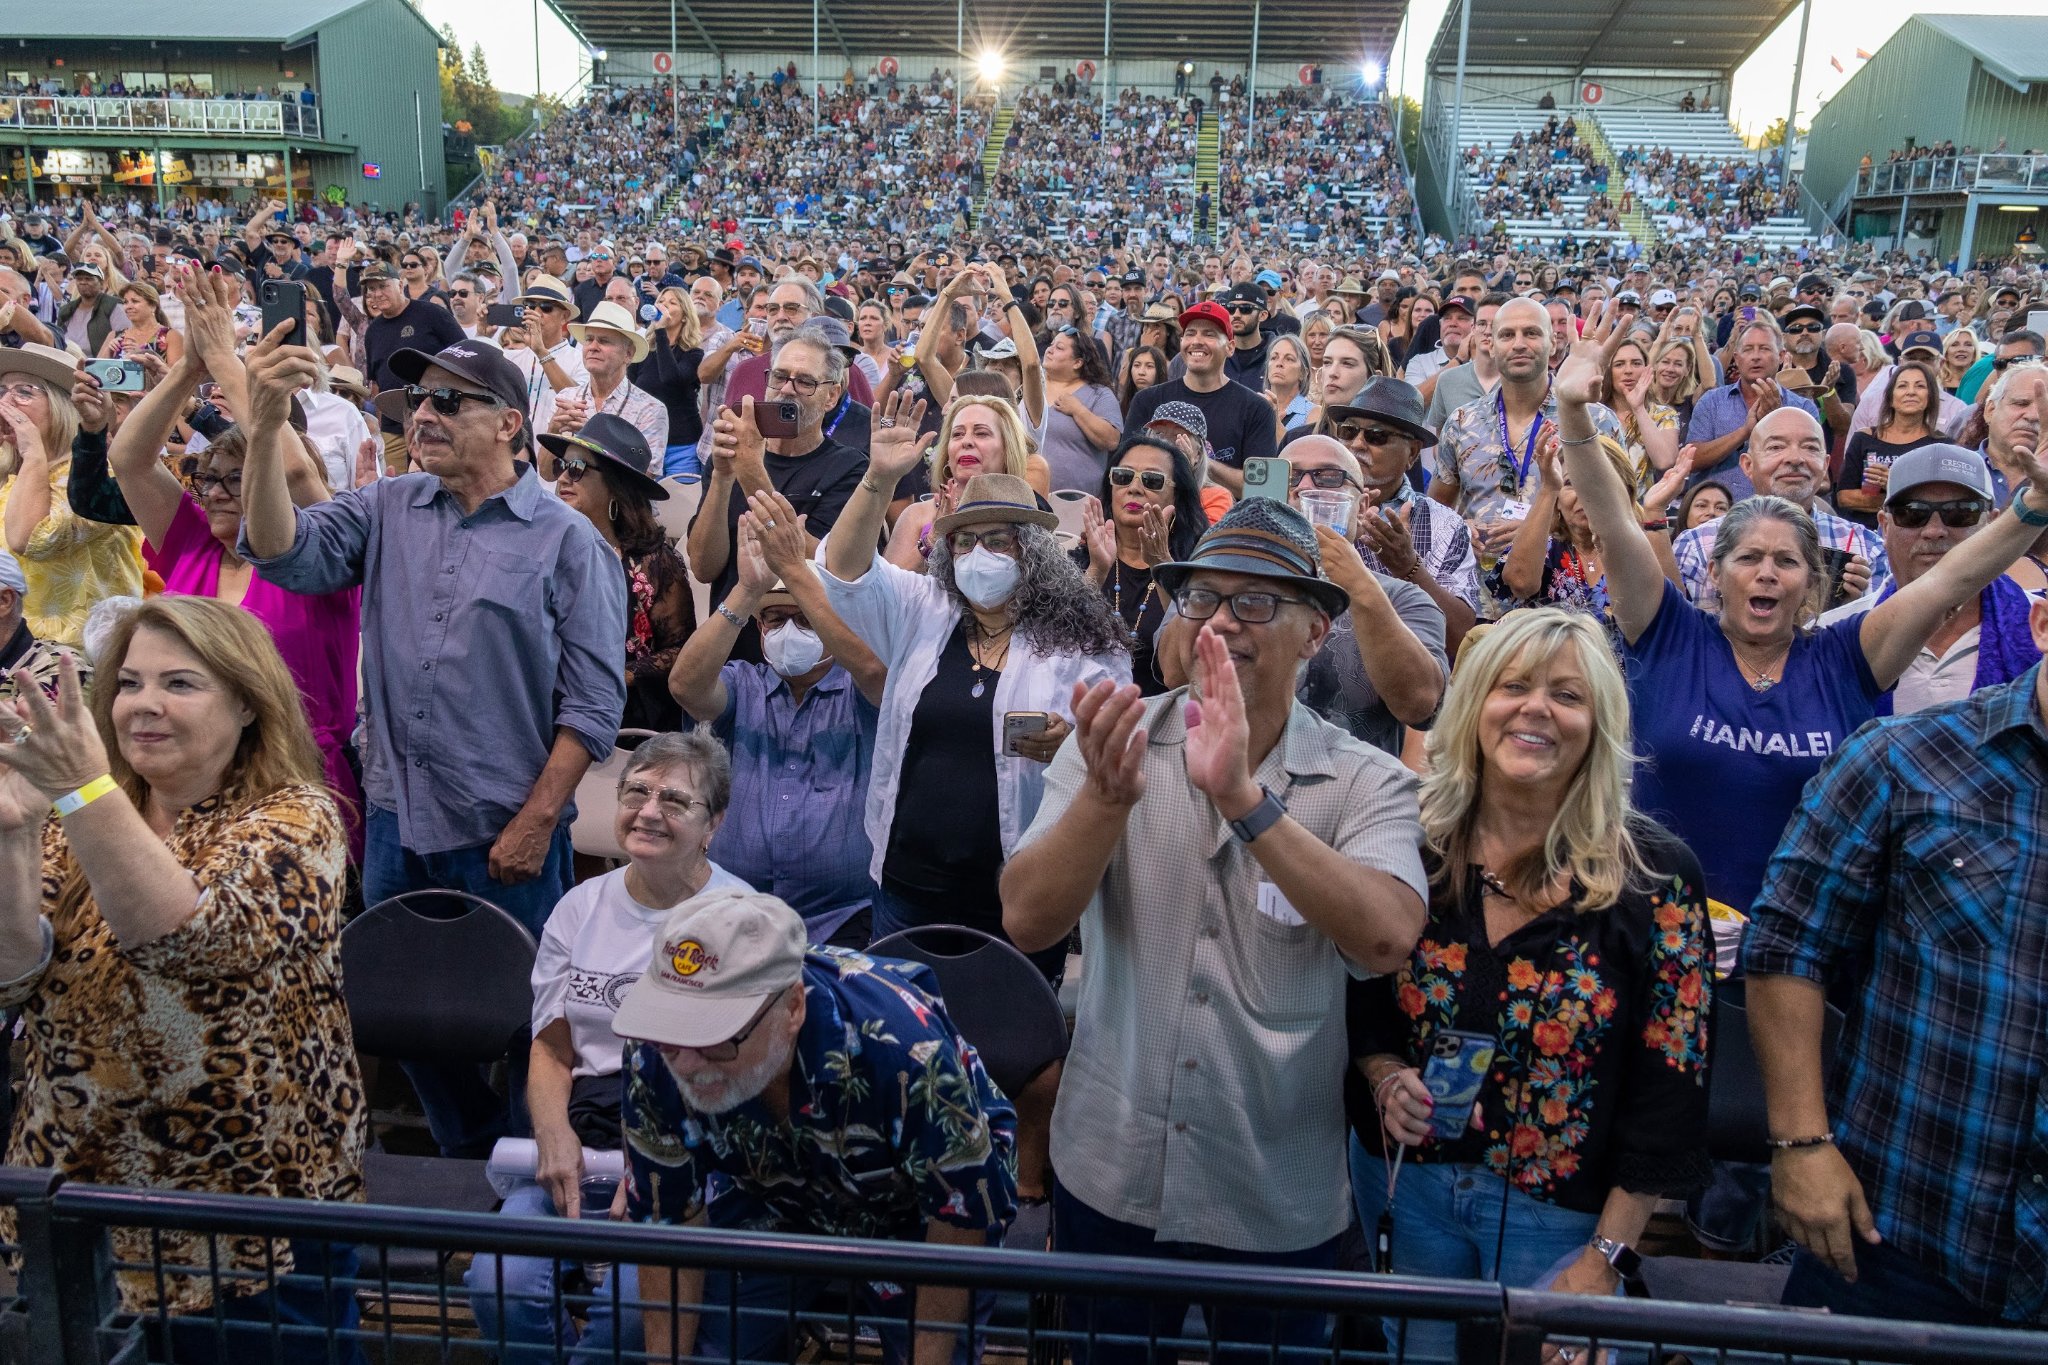 Santana crowd in Paso Robles, CA